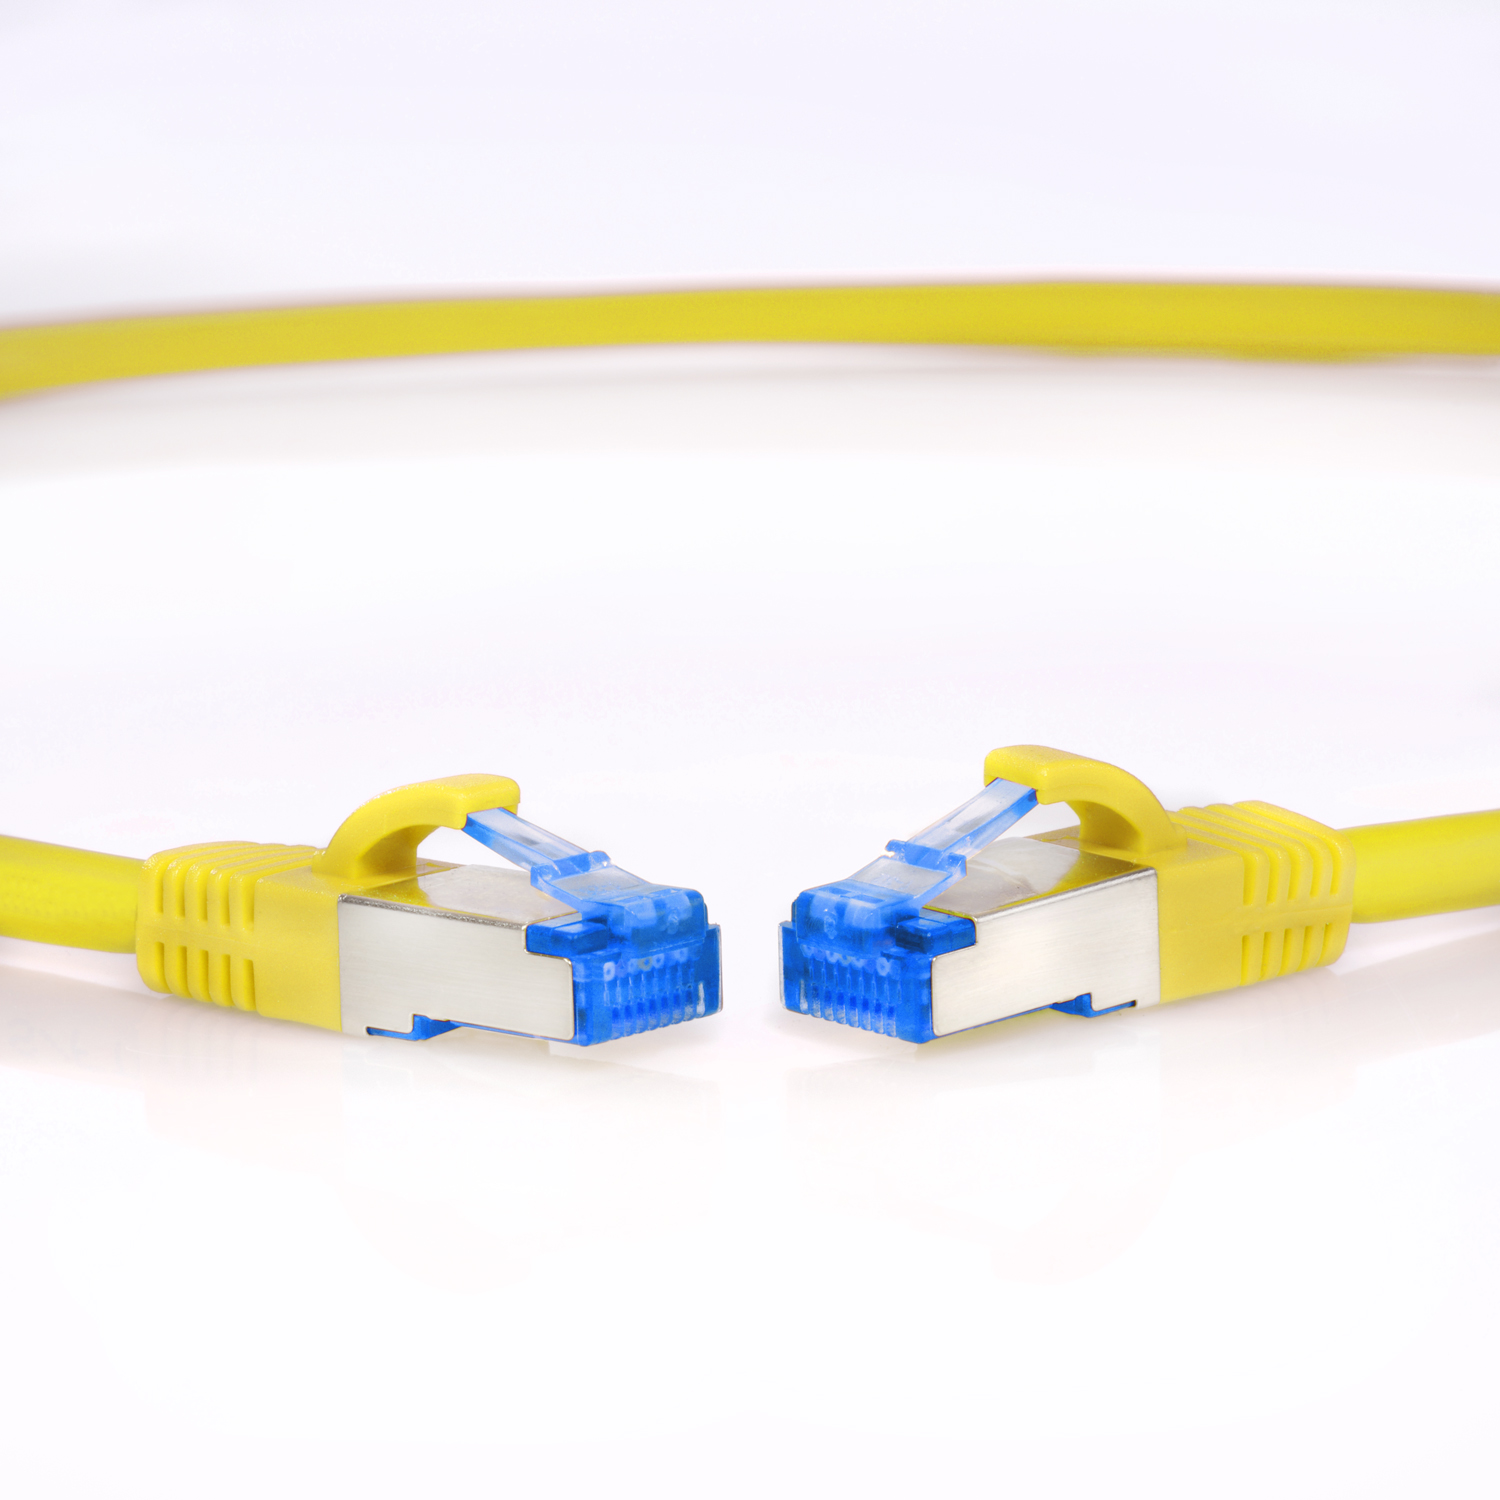 10 10m / Netzwerkkabel, gelb, Patchkabel 10GBit, TPFNET m S/FTP Netzwerkkabel